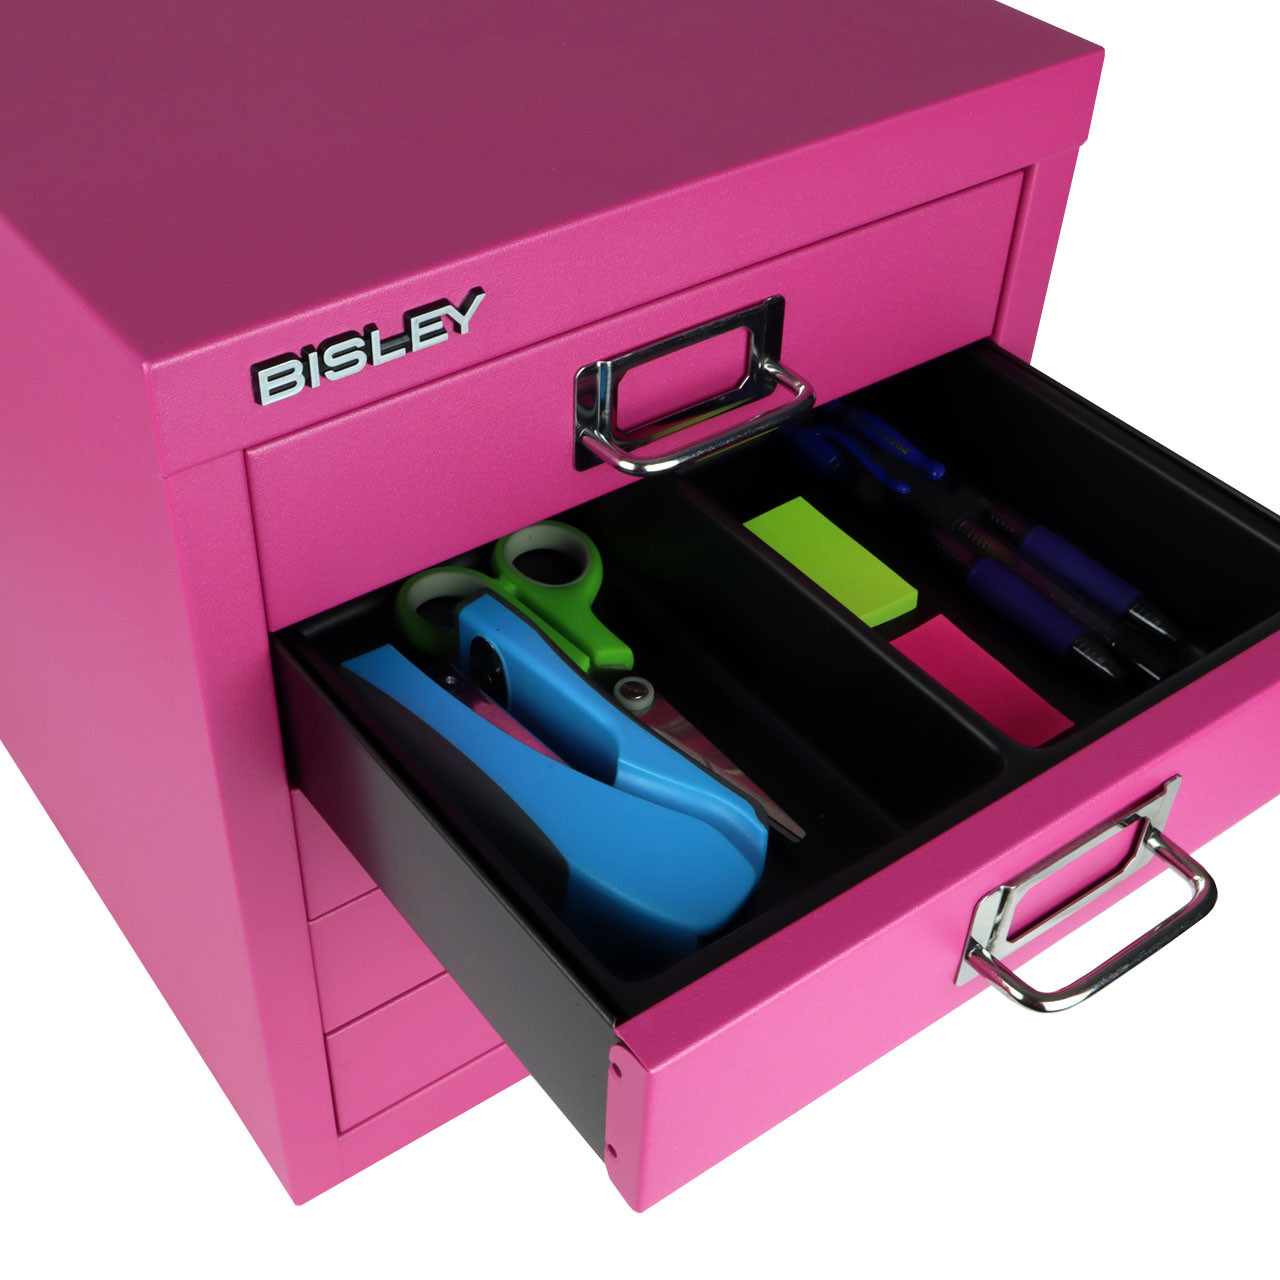 Bisley 10-Drawer Under-Desk MultiDrawer Steel Cabinet - Bindertek